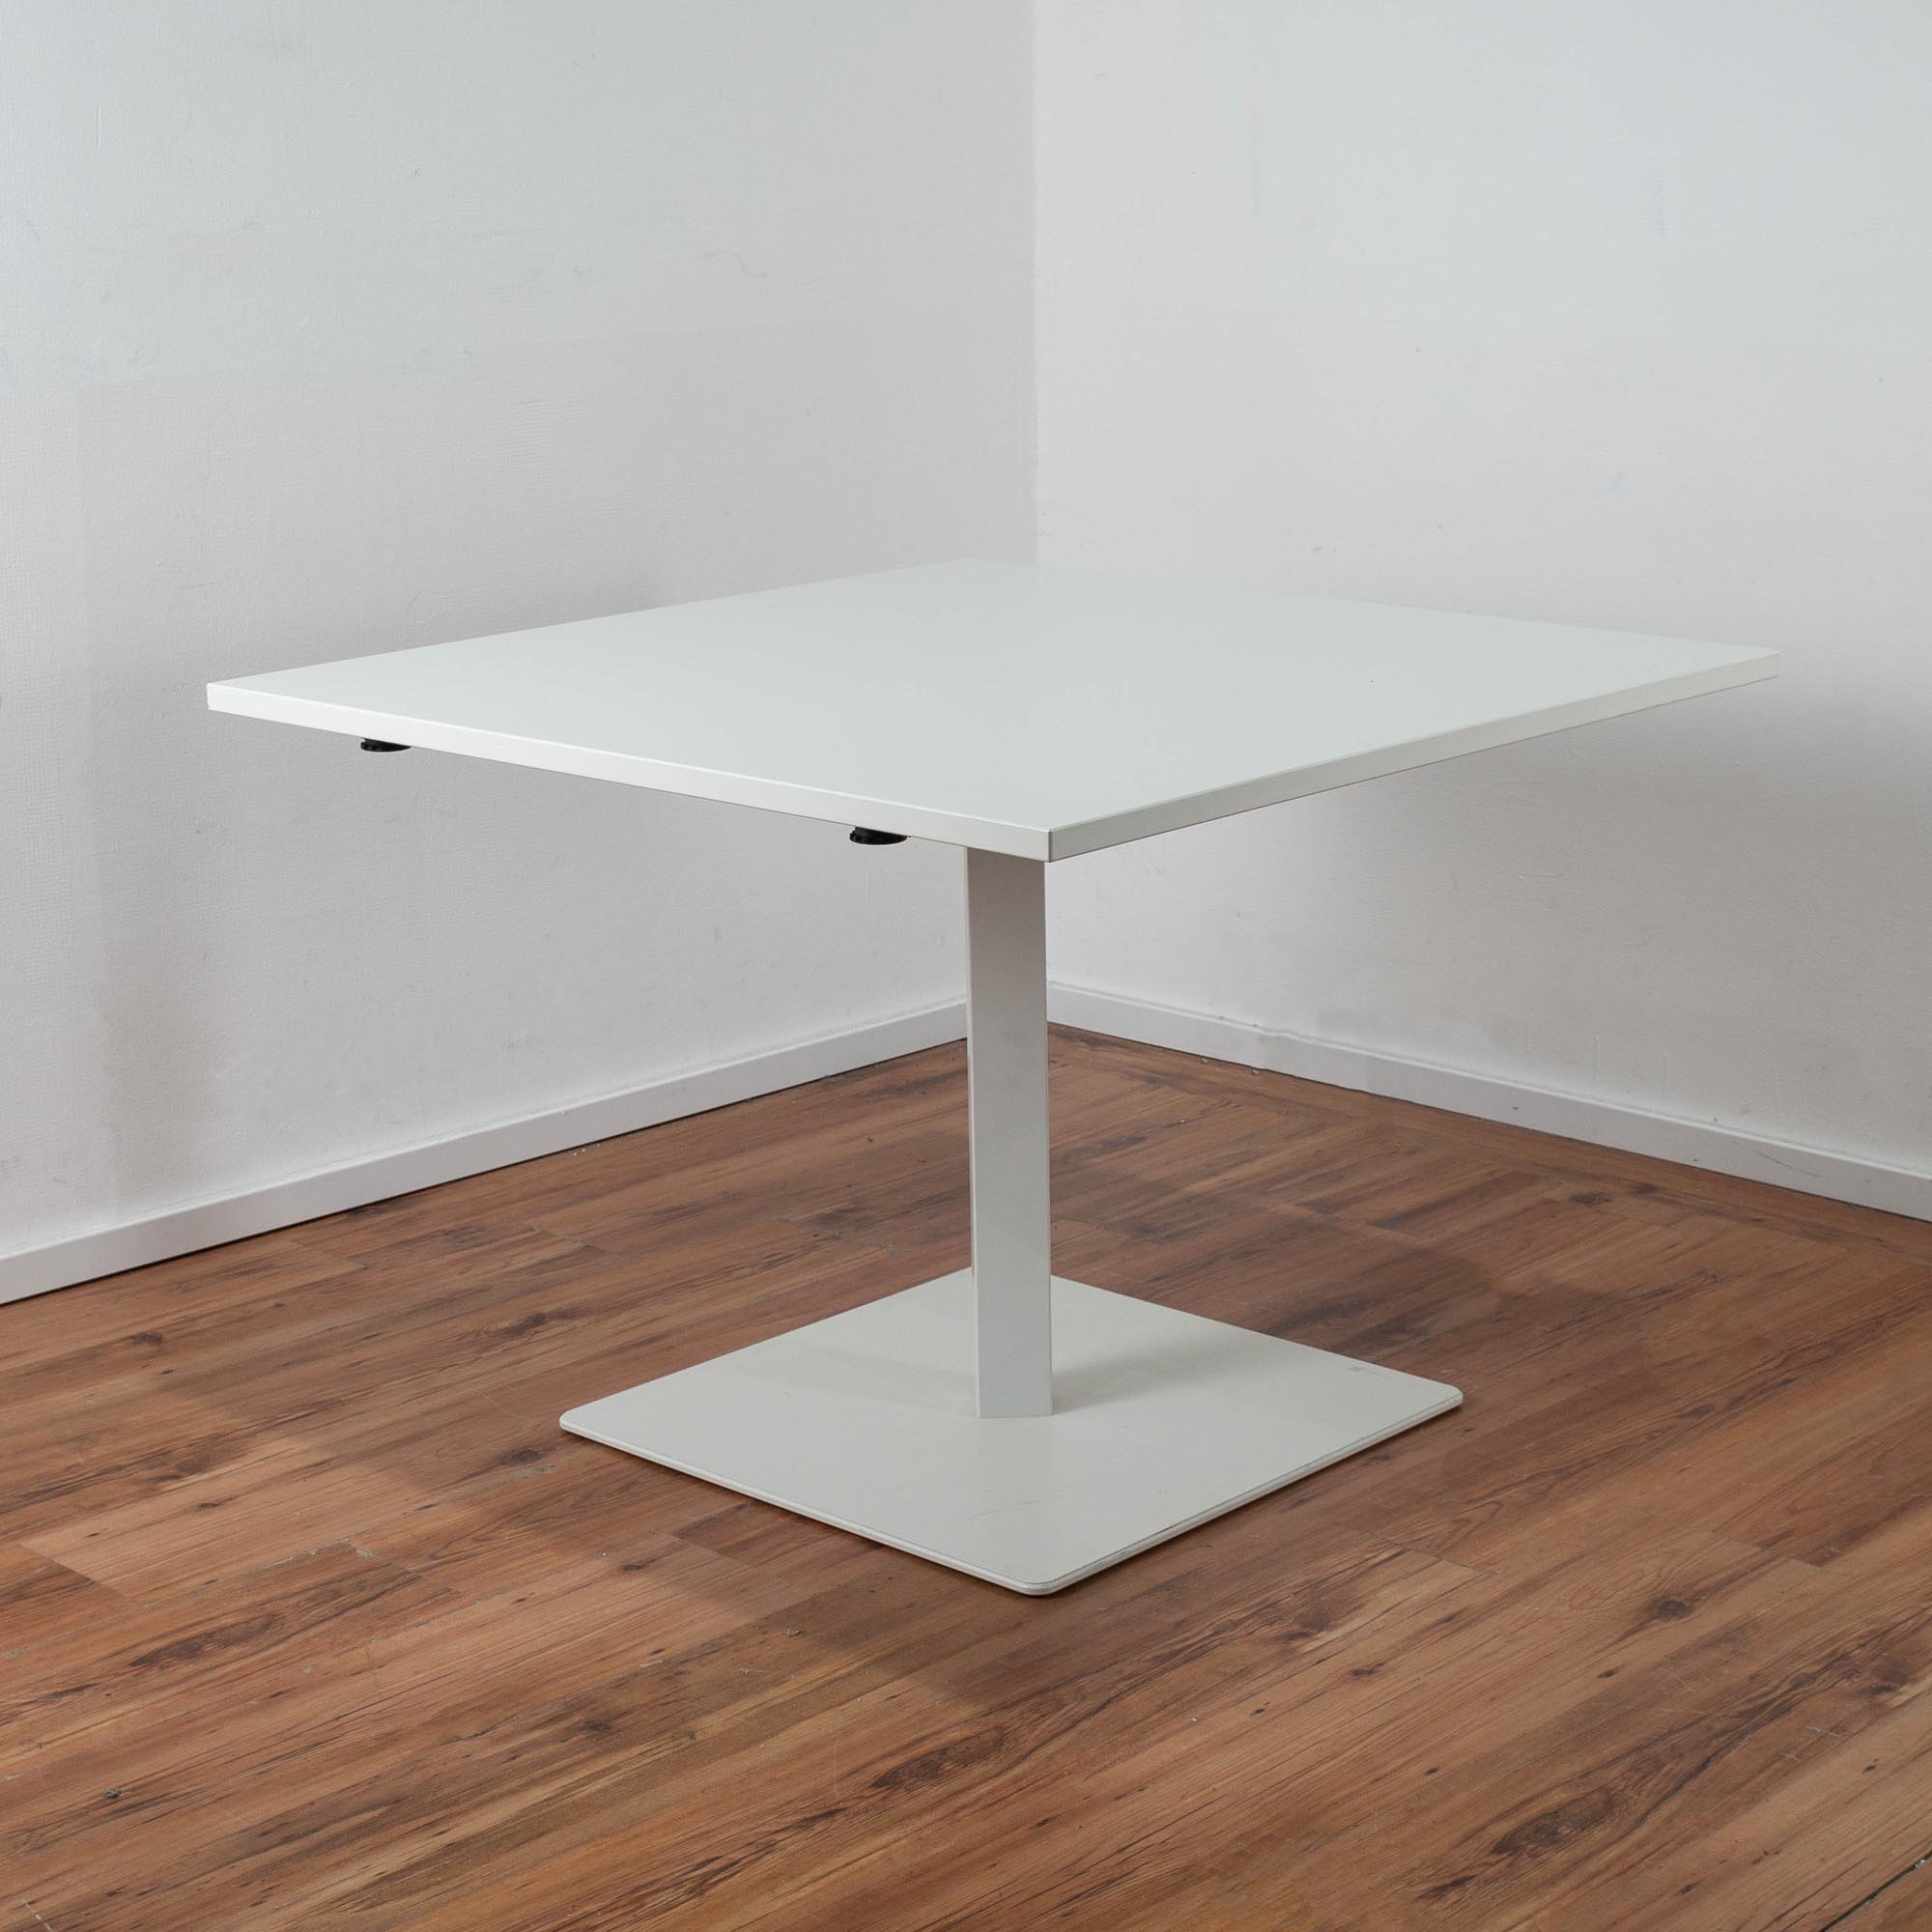 Assmann Besprechungstisch weiß 100 x 100 cm - koppelbar mit weiteren Tischen - Gestell weiß 